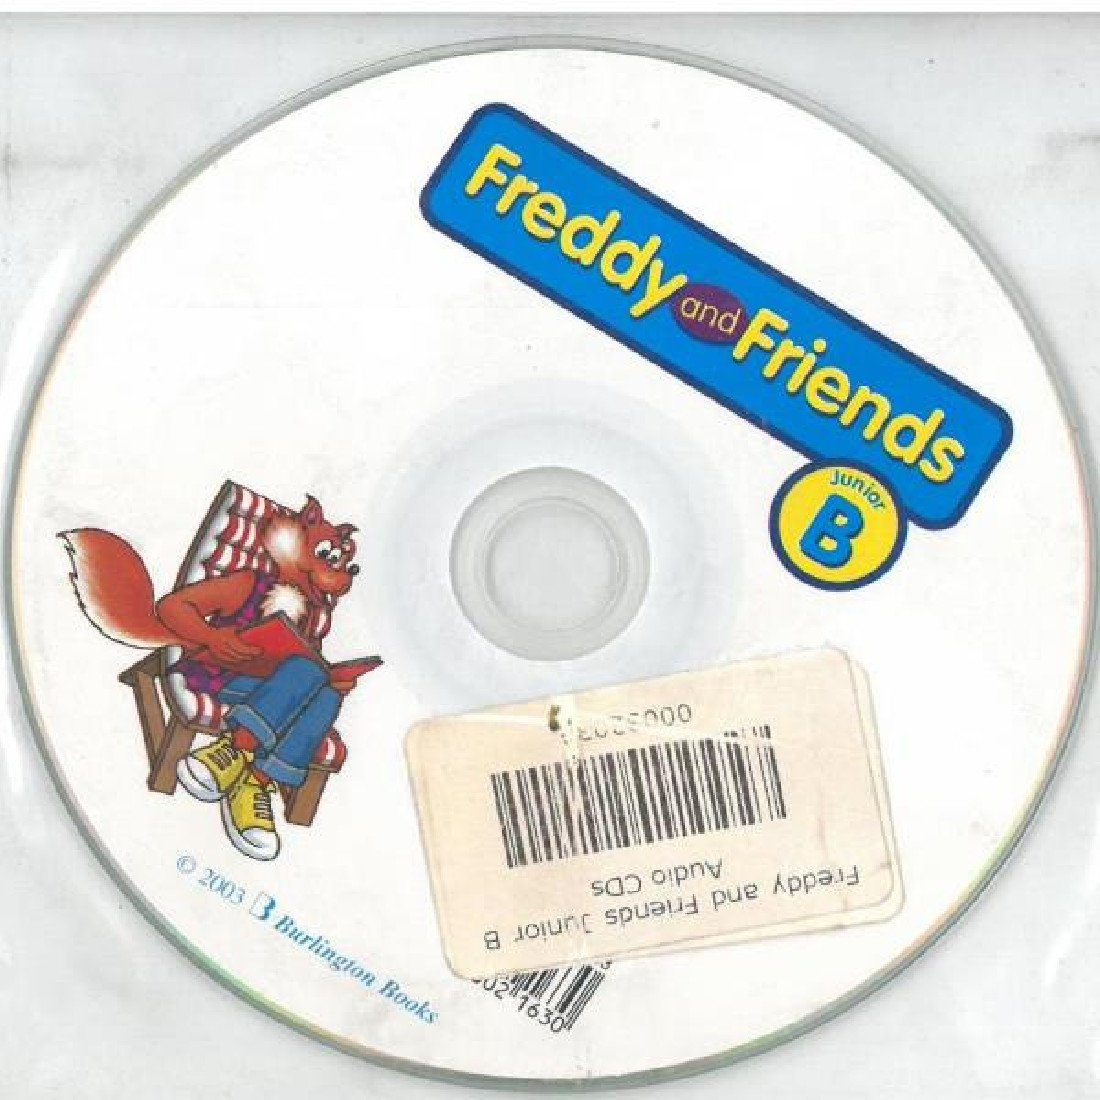 FREDDY AND FRIENDS JUNIOR B CDs(2)